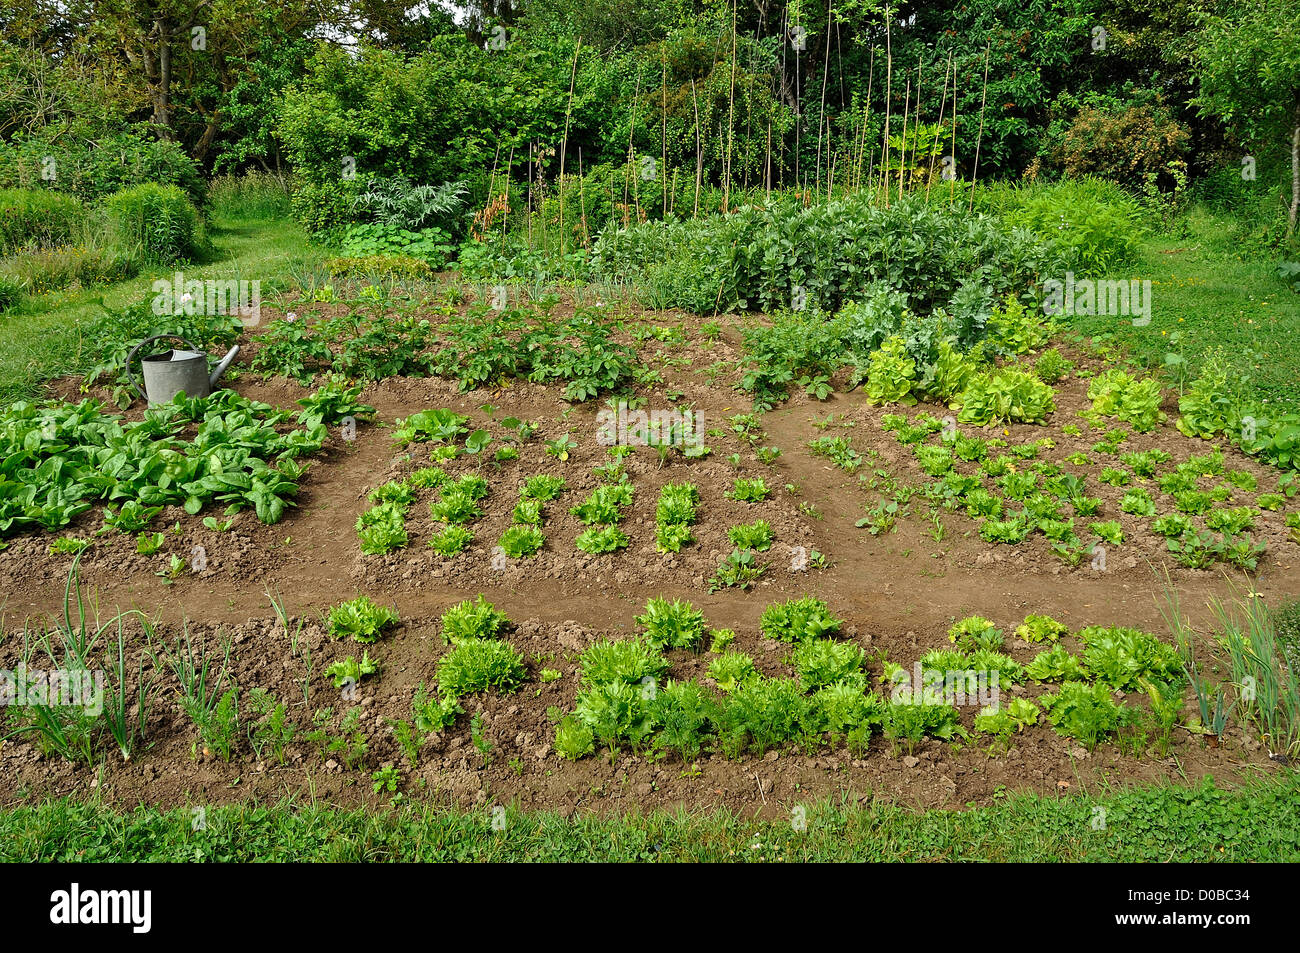 Un tradizionale giardino vegetale, letto misto di carote, lattughe, spinachs, patate, fava, ... Foto Stock